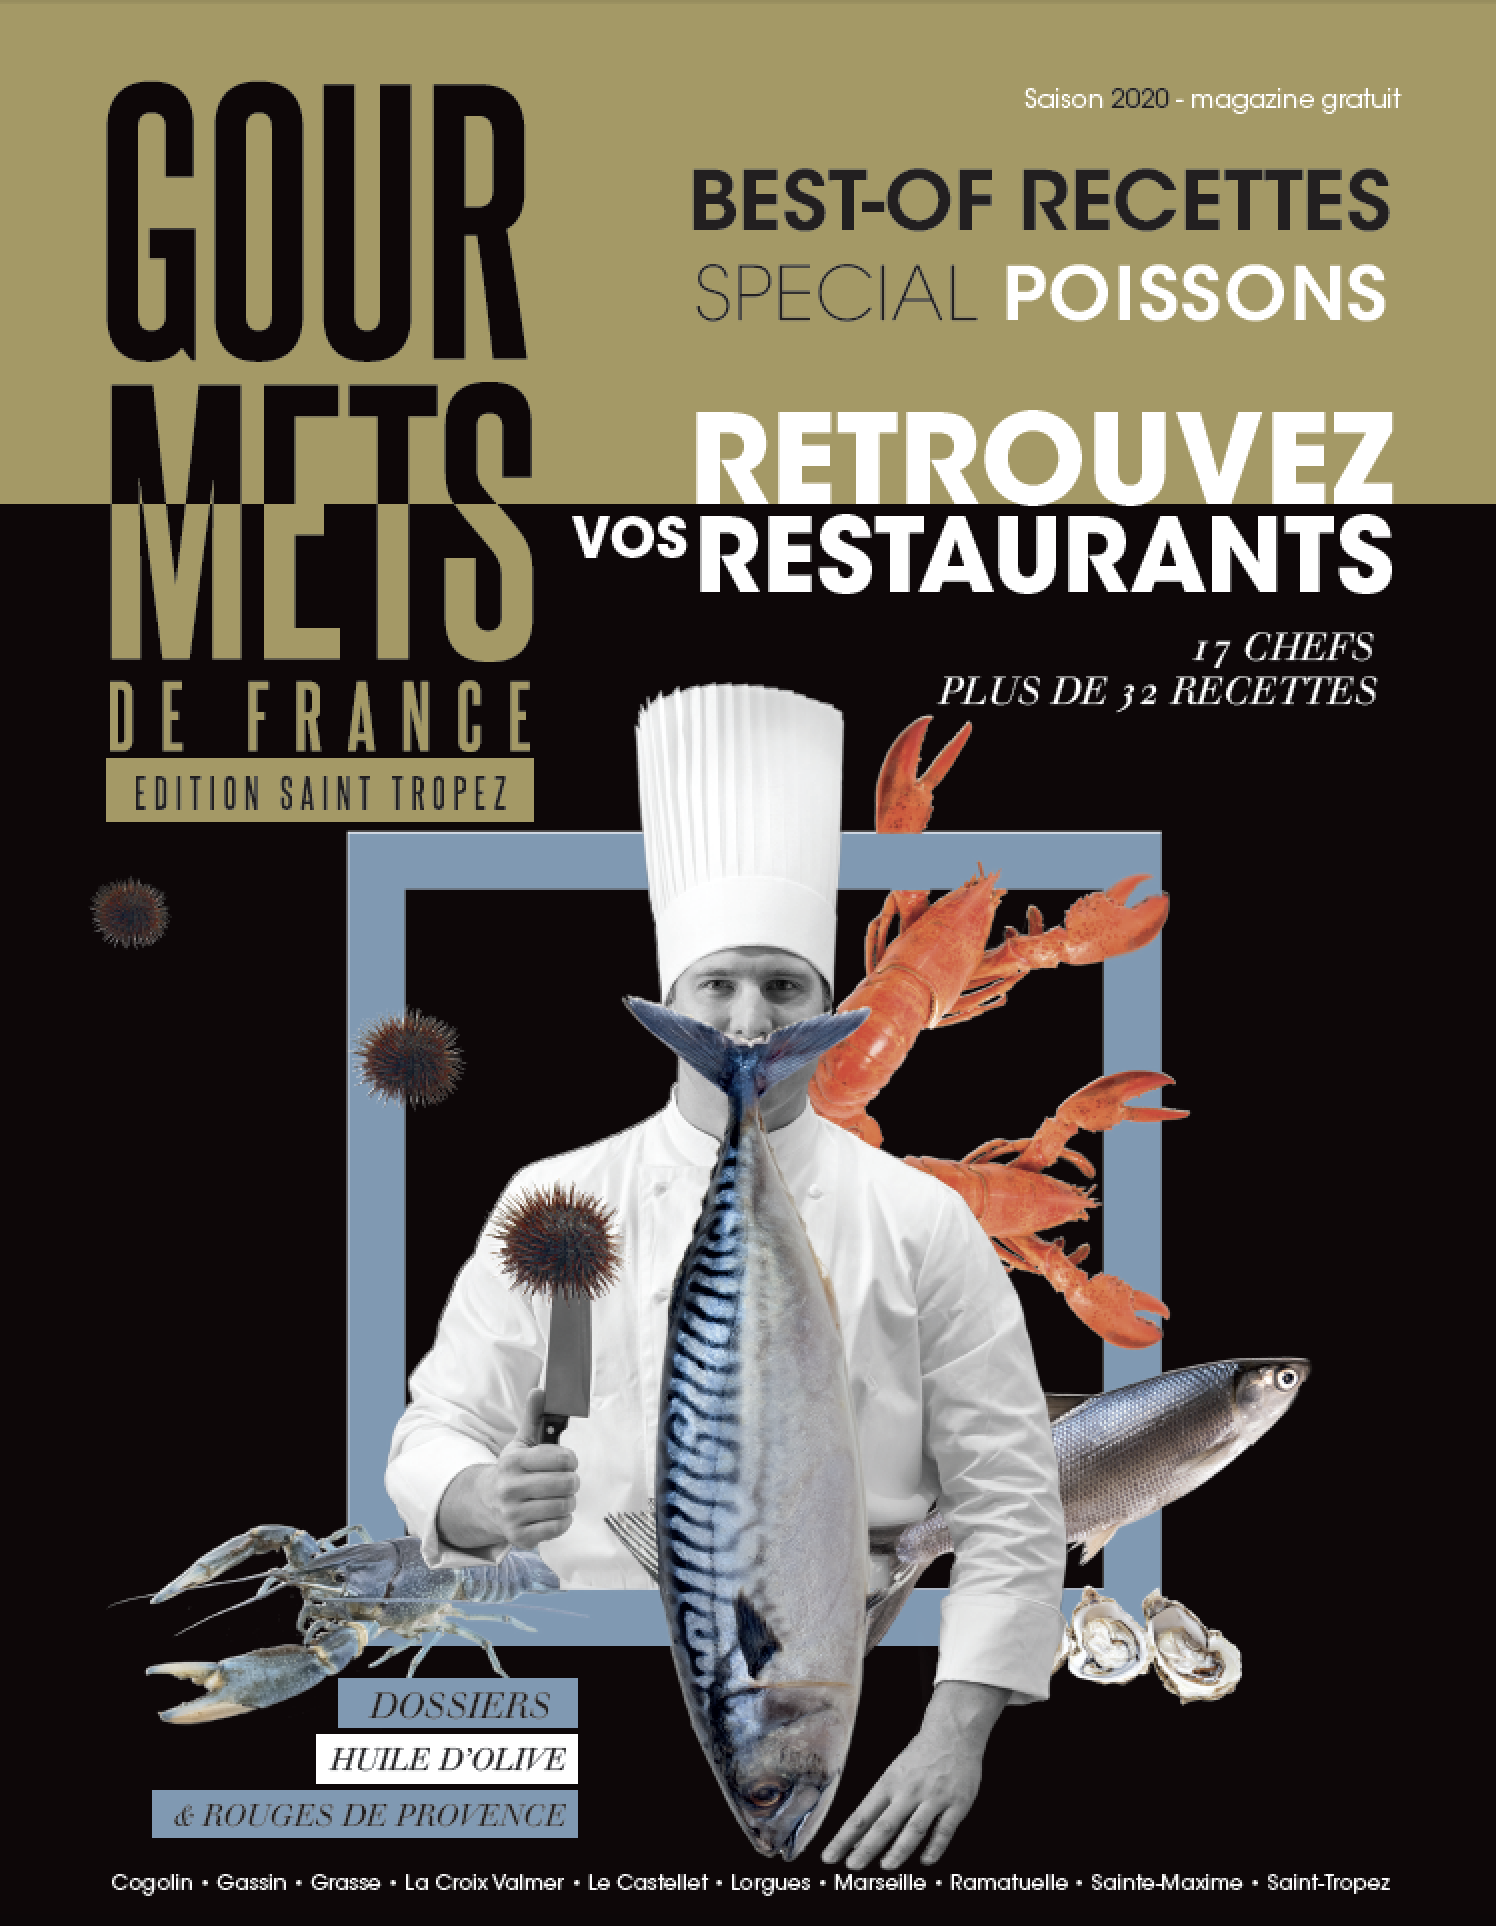 Magazine Gourmets de France édition Saint Tropez 2020 